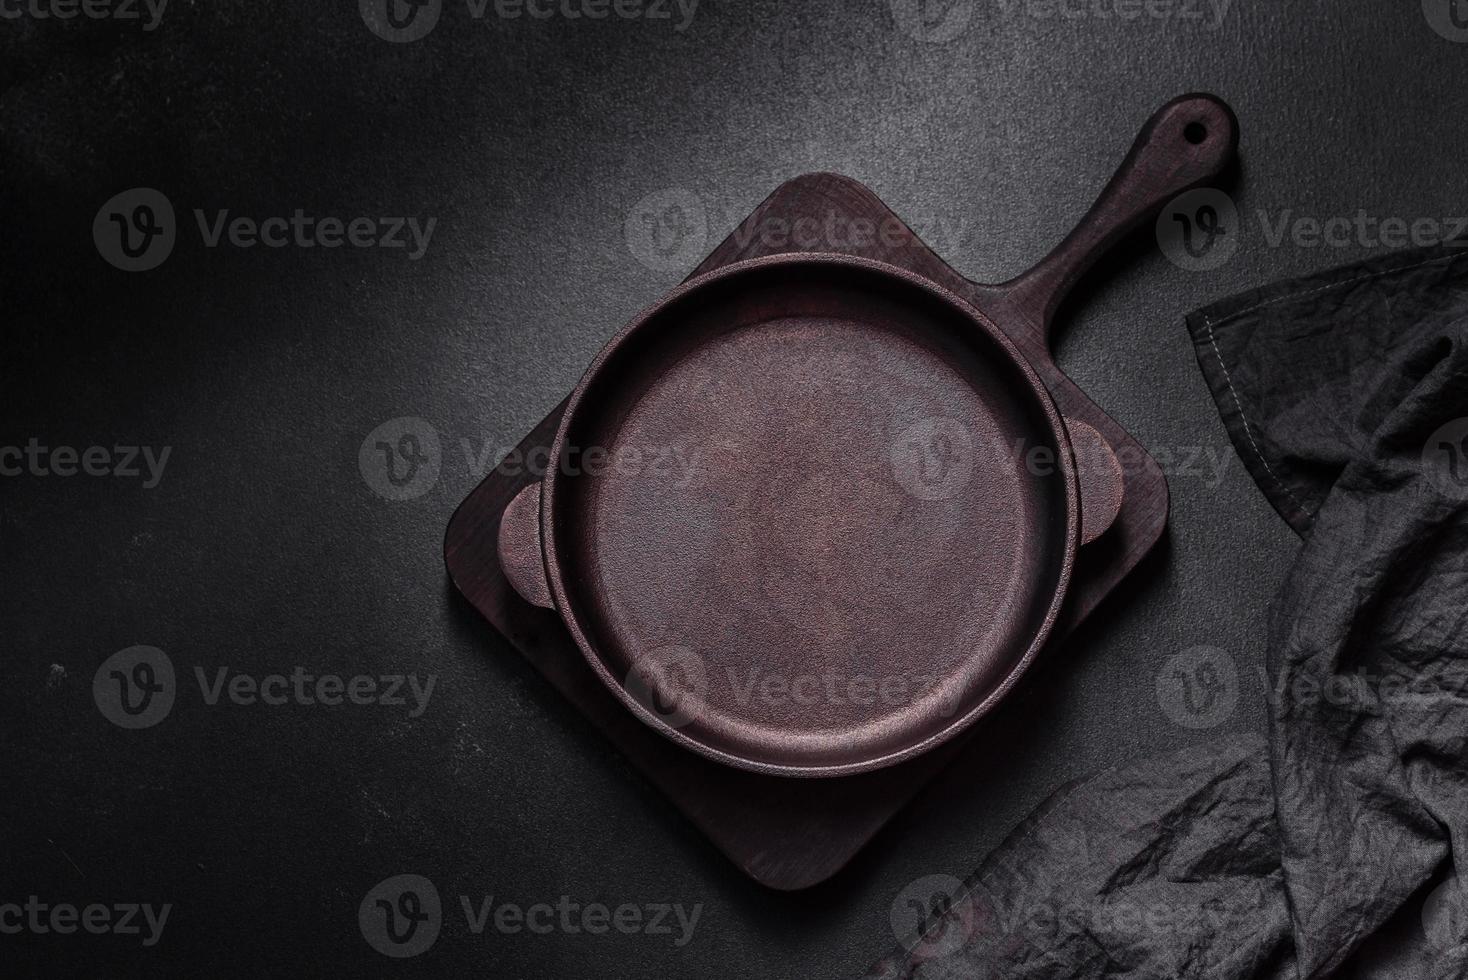 sartén vacía de hierro marrón con utensilios de cocina sobre un fondo de hormigón oscuro foto